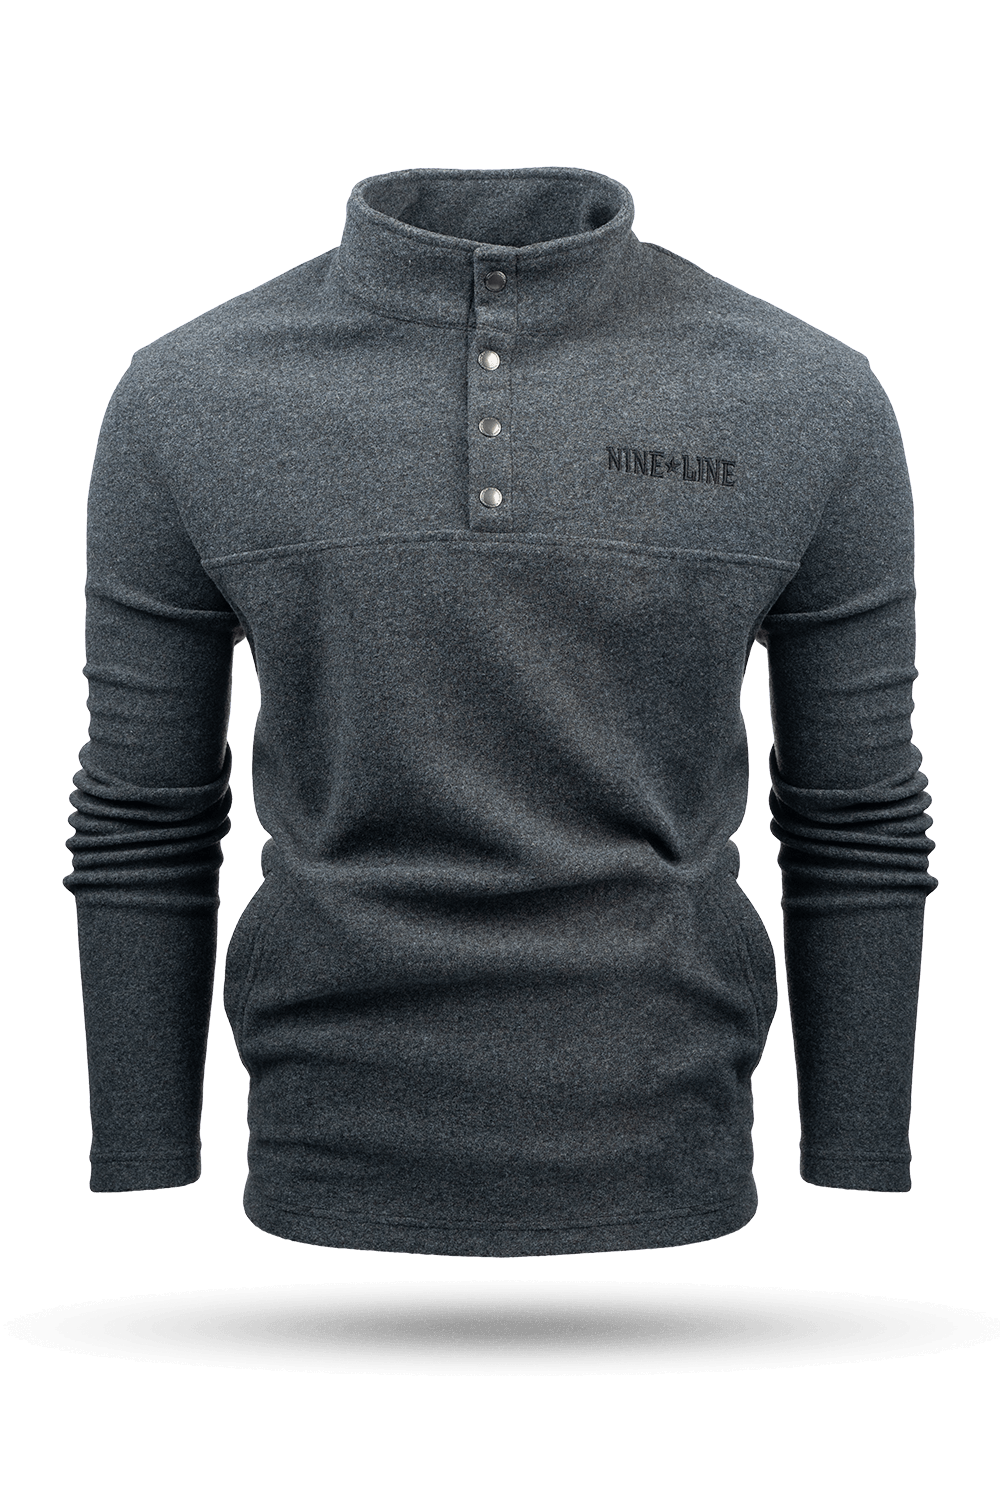 Men's Flannel Snap Pullover - Nine Line Apparel